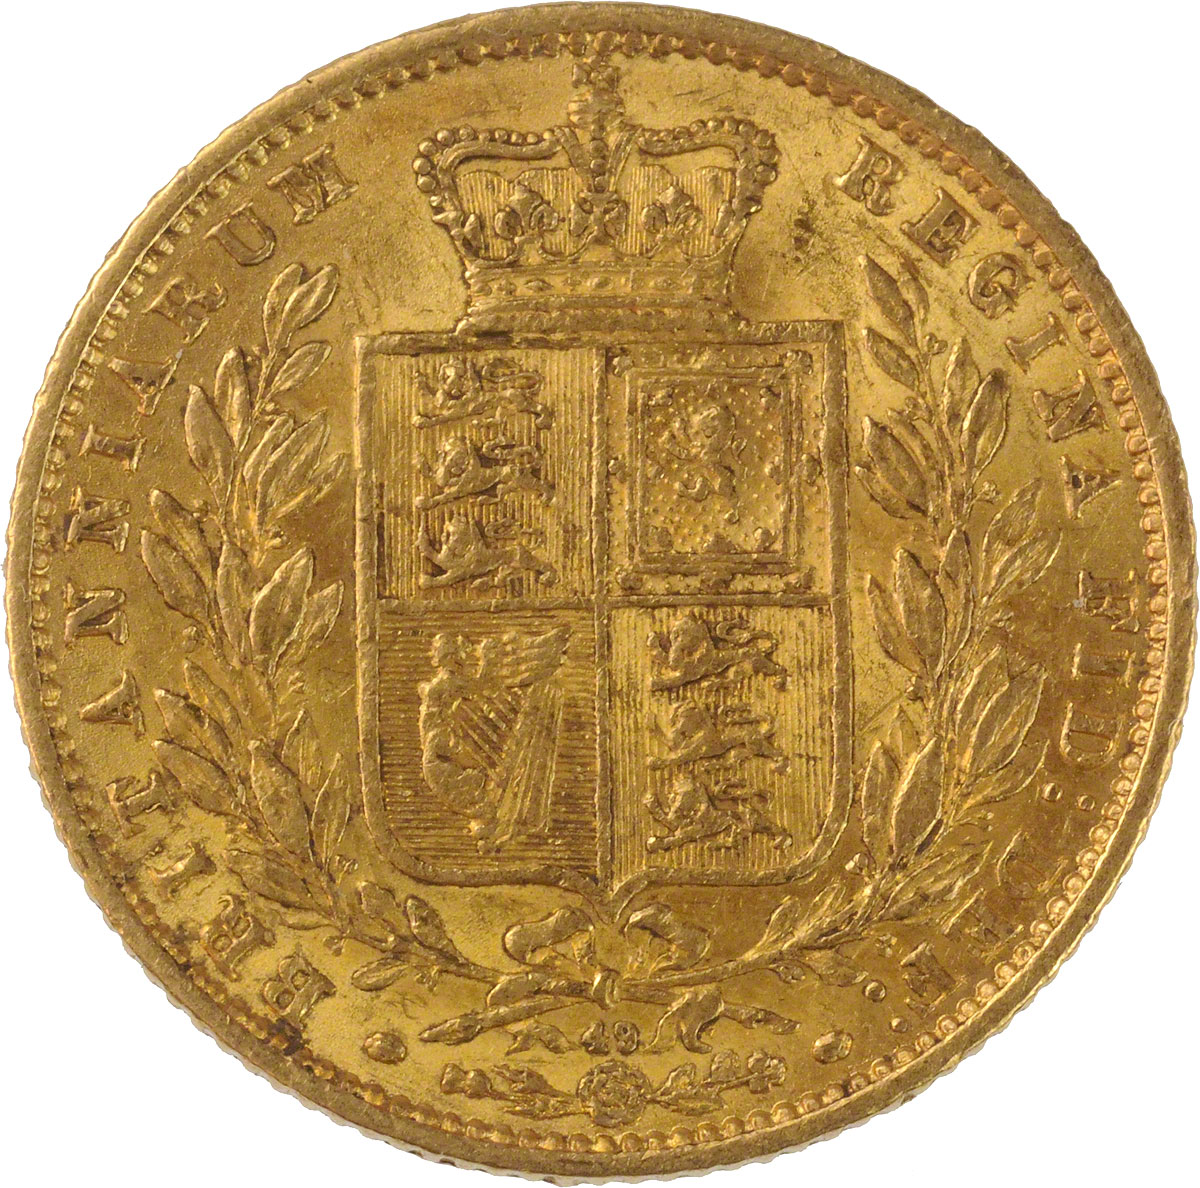 1866 Βικτώρια (Νομισματοκοπείο Λονδίνου)